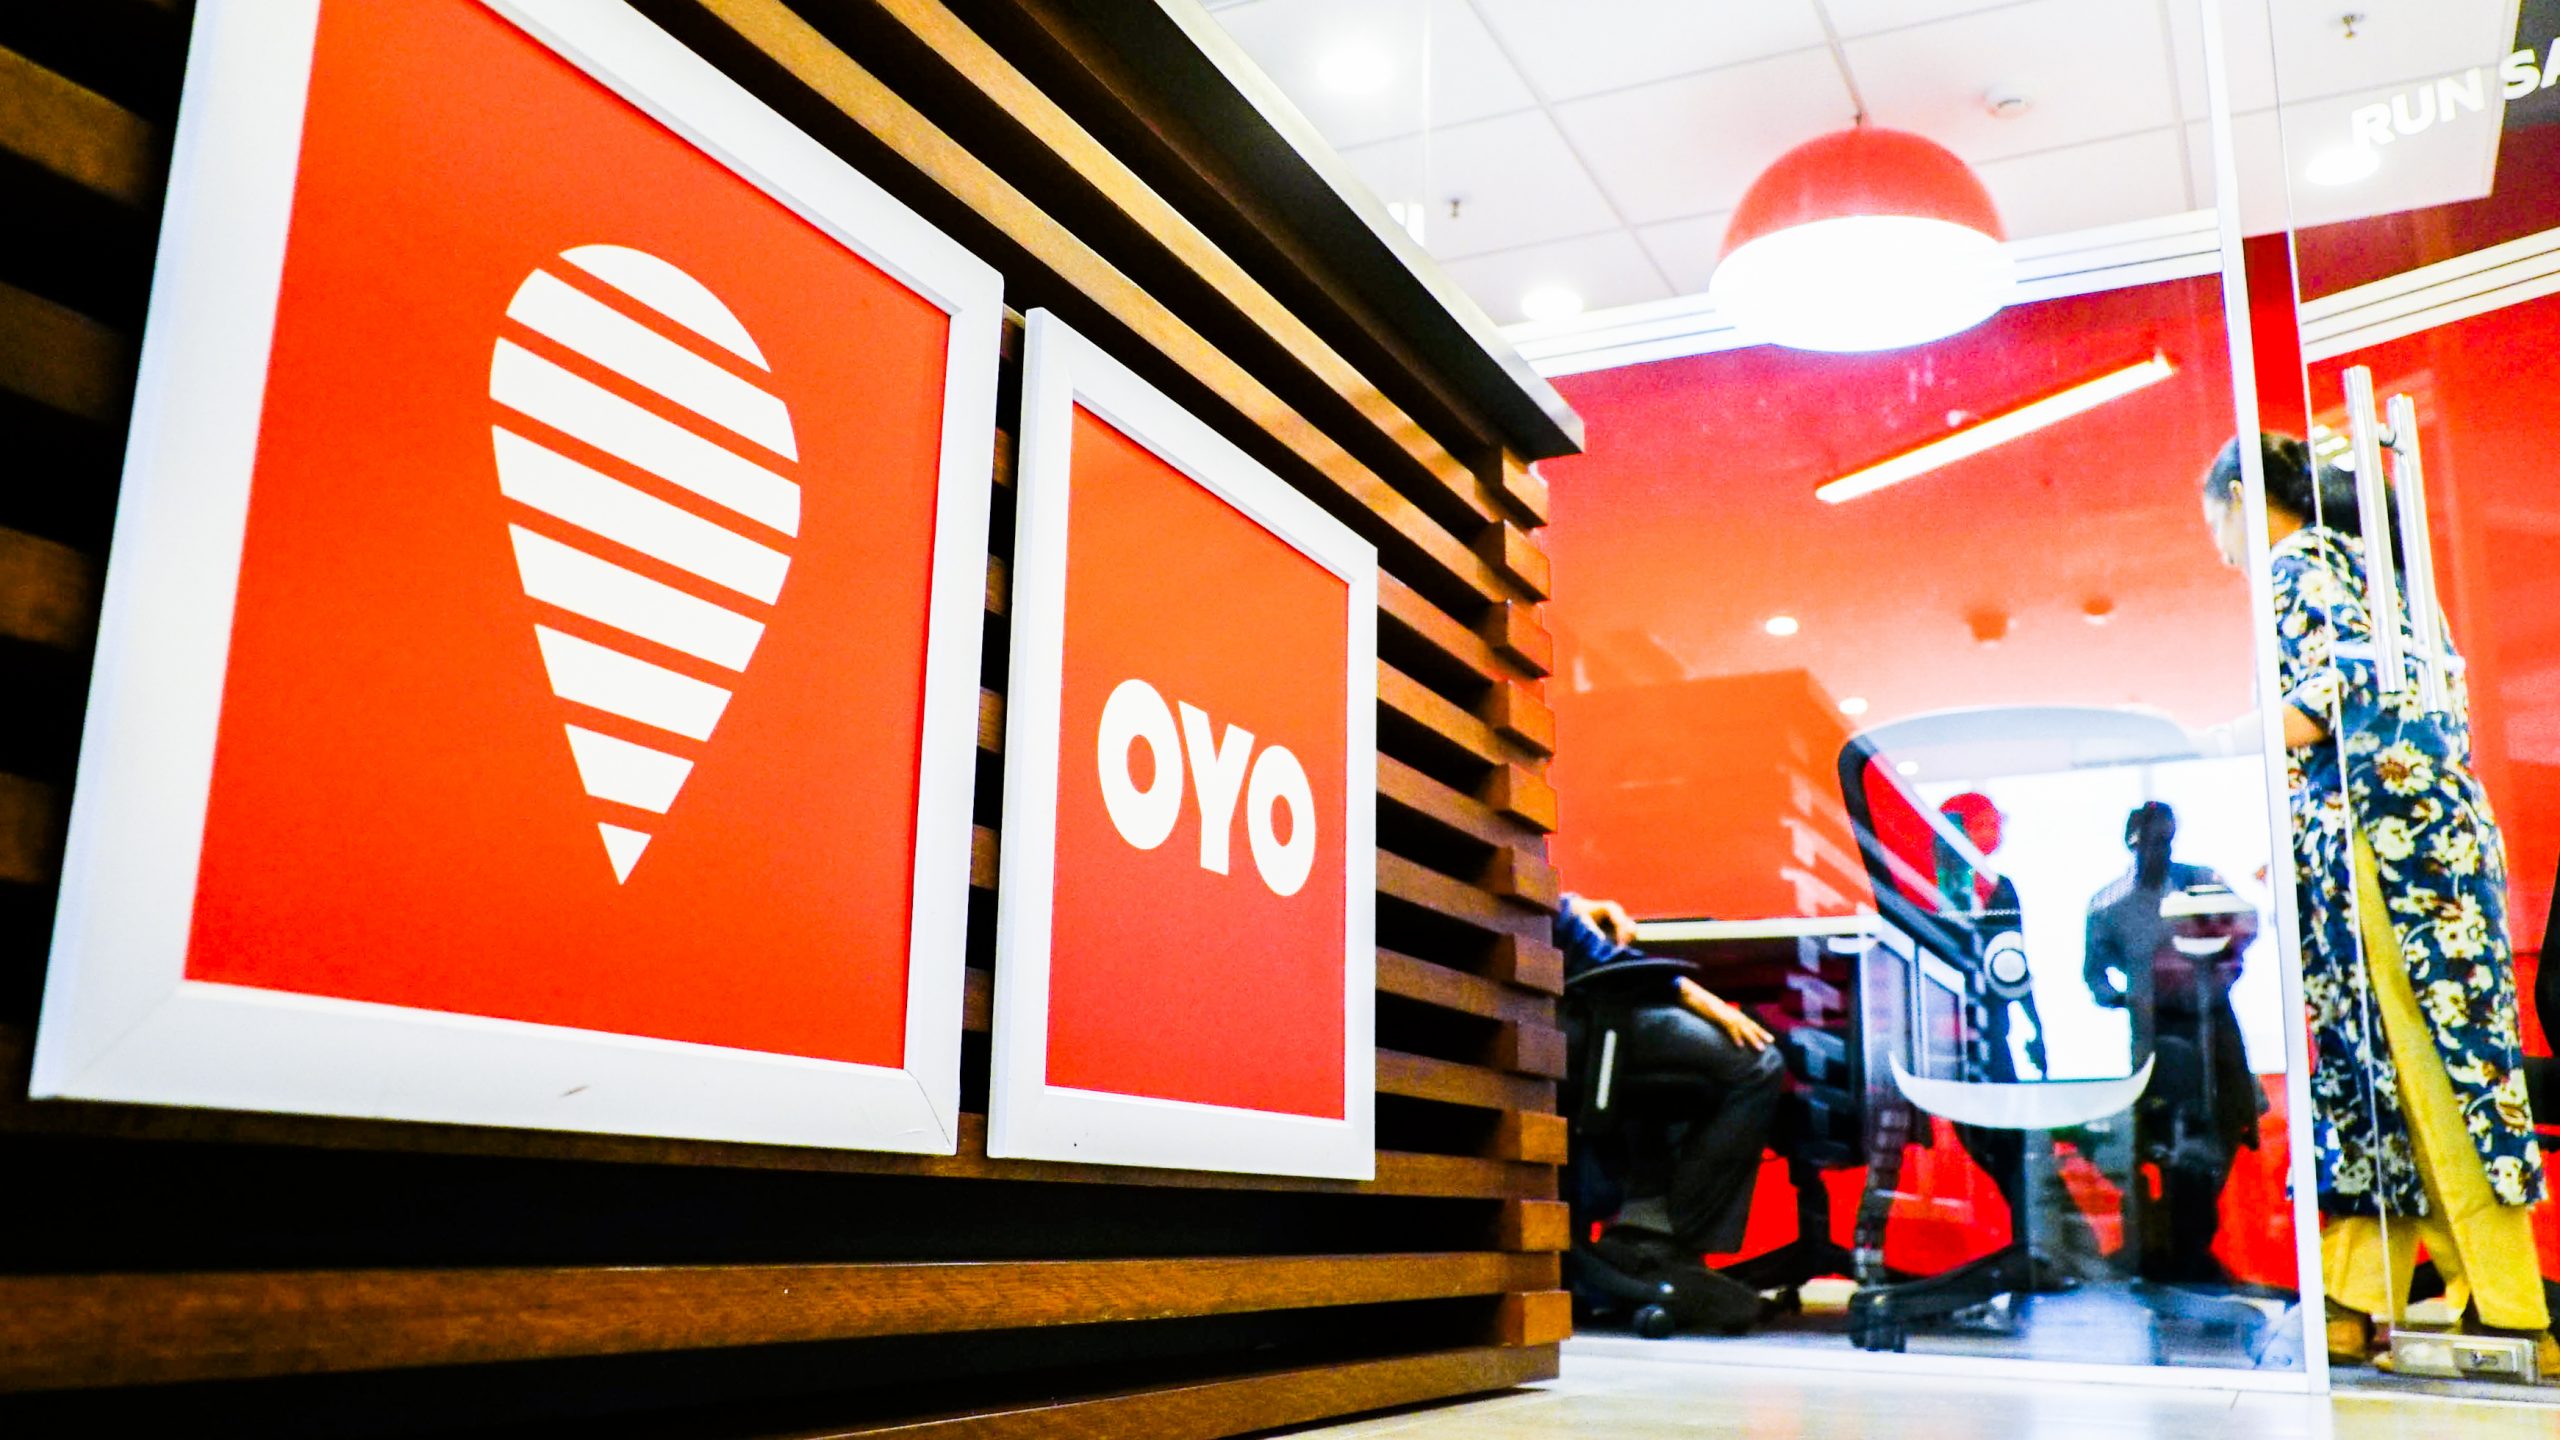 Mengenal OYO, Startup Unicorn India yang Telah Mendunia